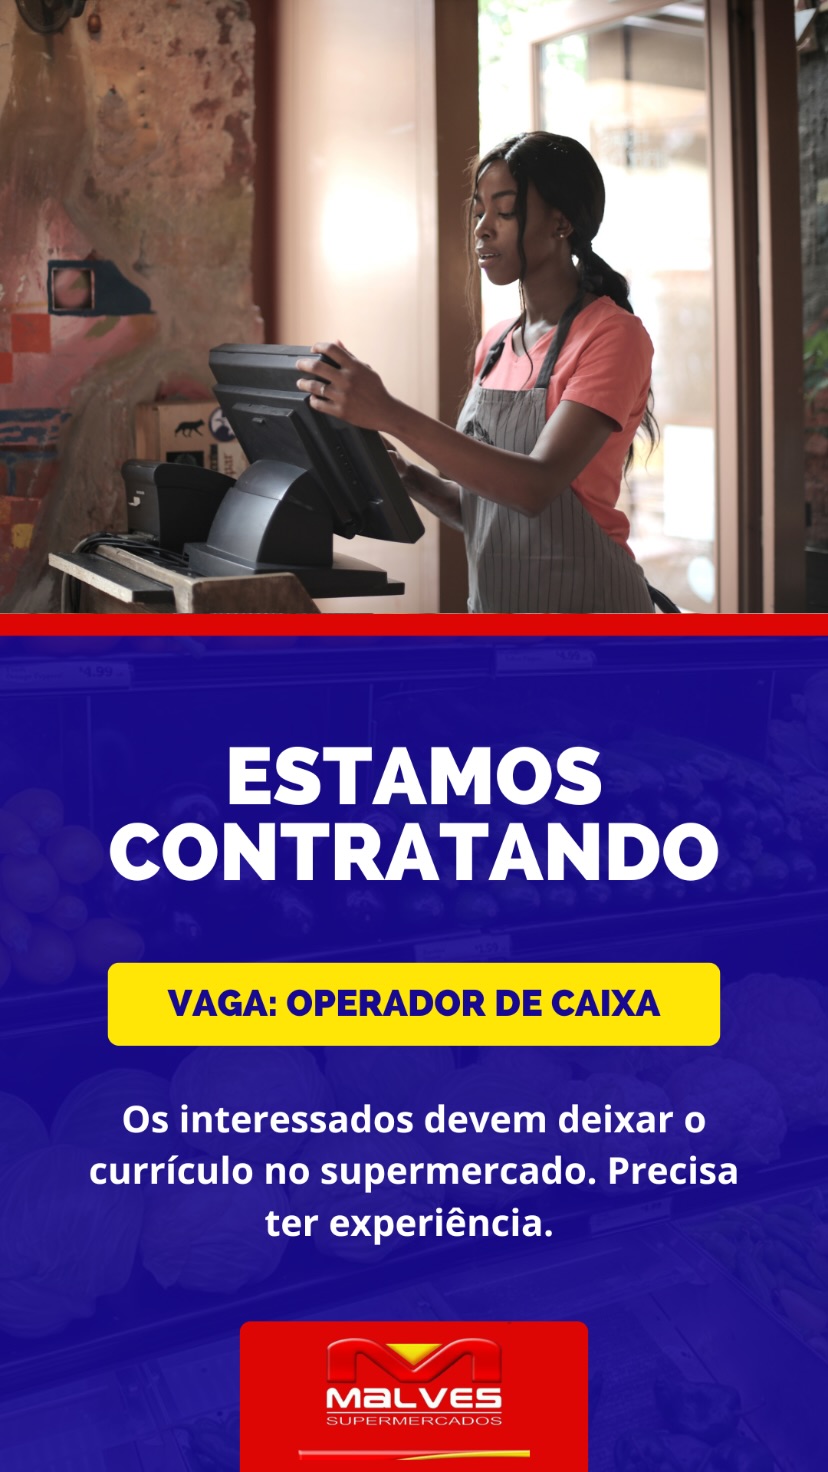 434774934_18017115209181193_6924188590854922948_n-2 Oportunidade de Emprego no Malves Supermercado em Monteiro